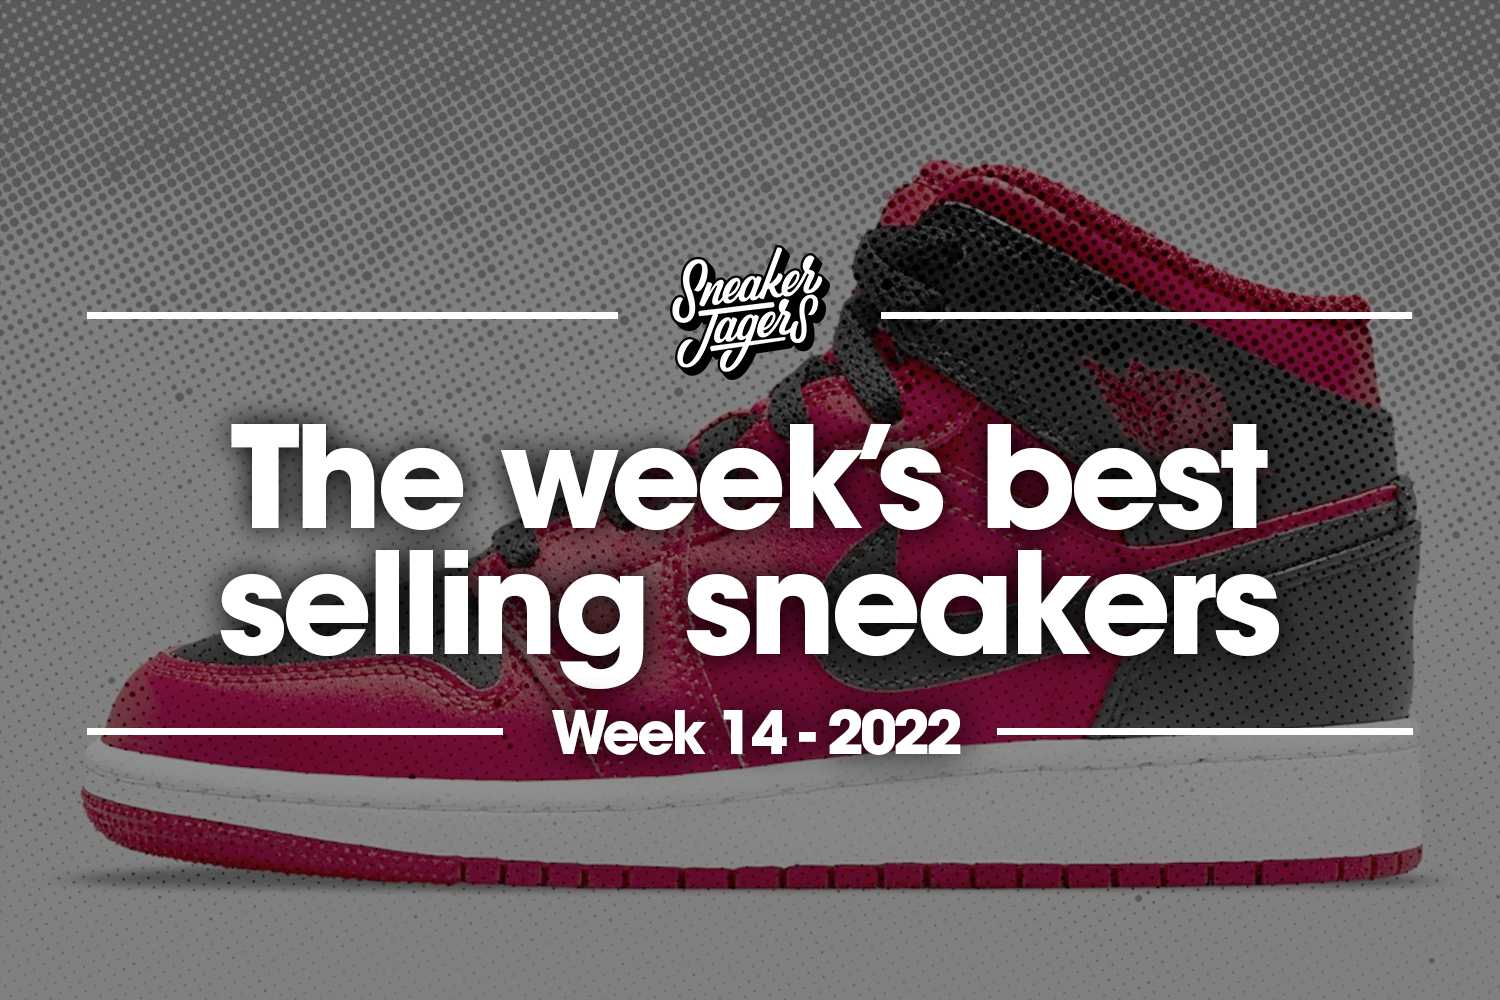 De 5 bestverkochte sneakers van week 14